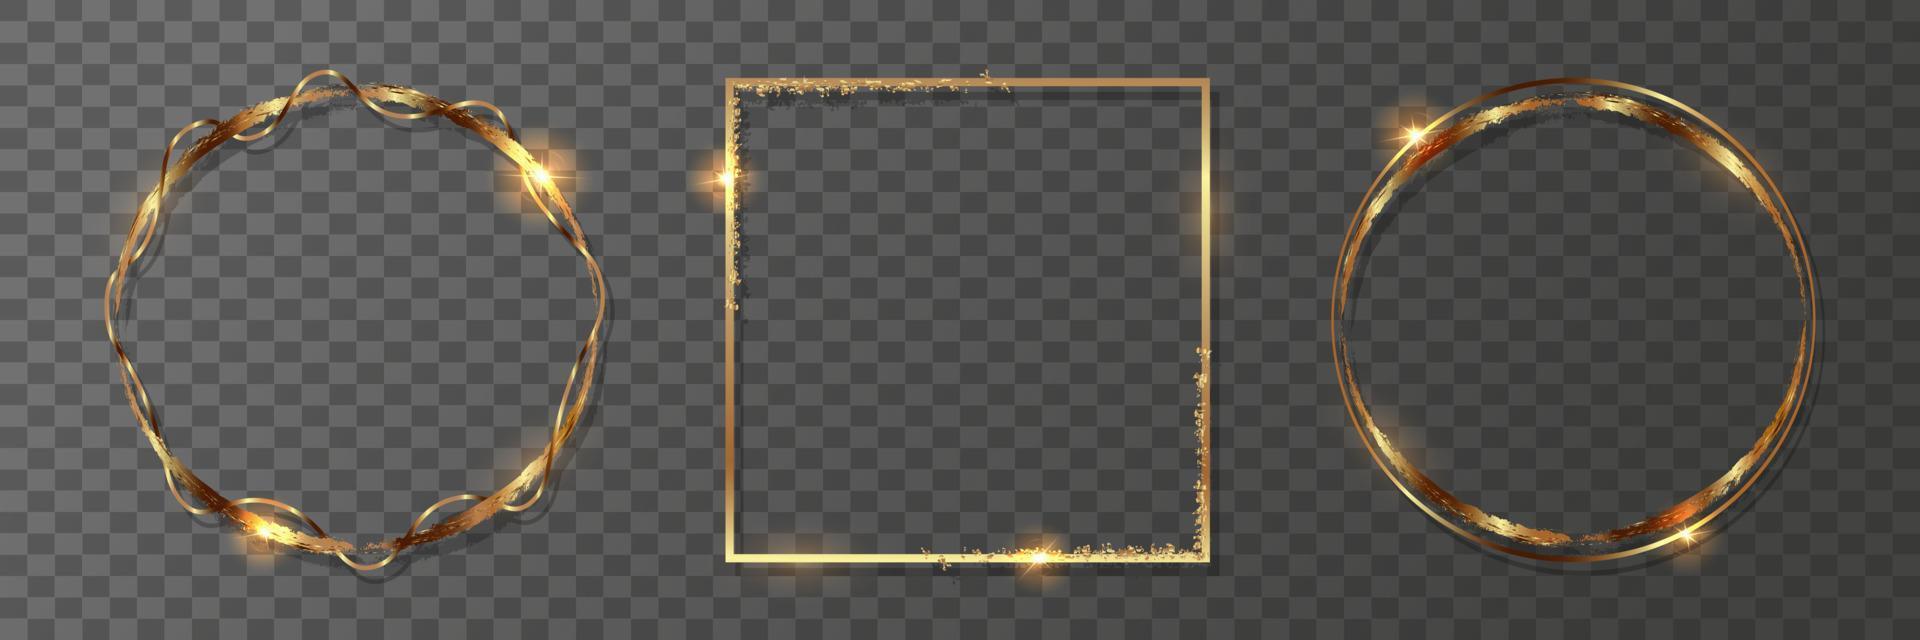 satz goldener geometrischer rahmen. runder und quadratischer goldener rahmen auf einem transparenten hintergrund. vektor